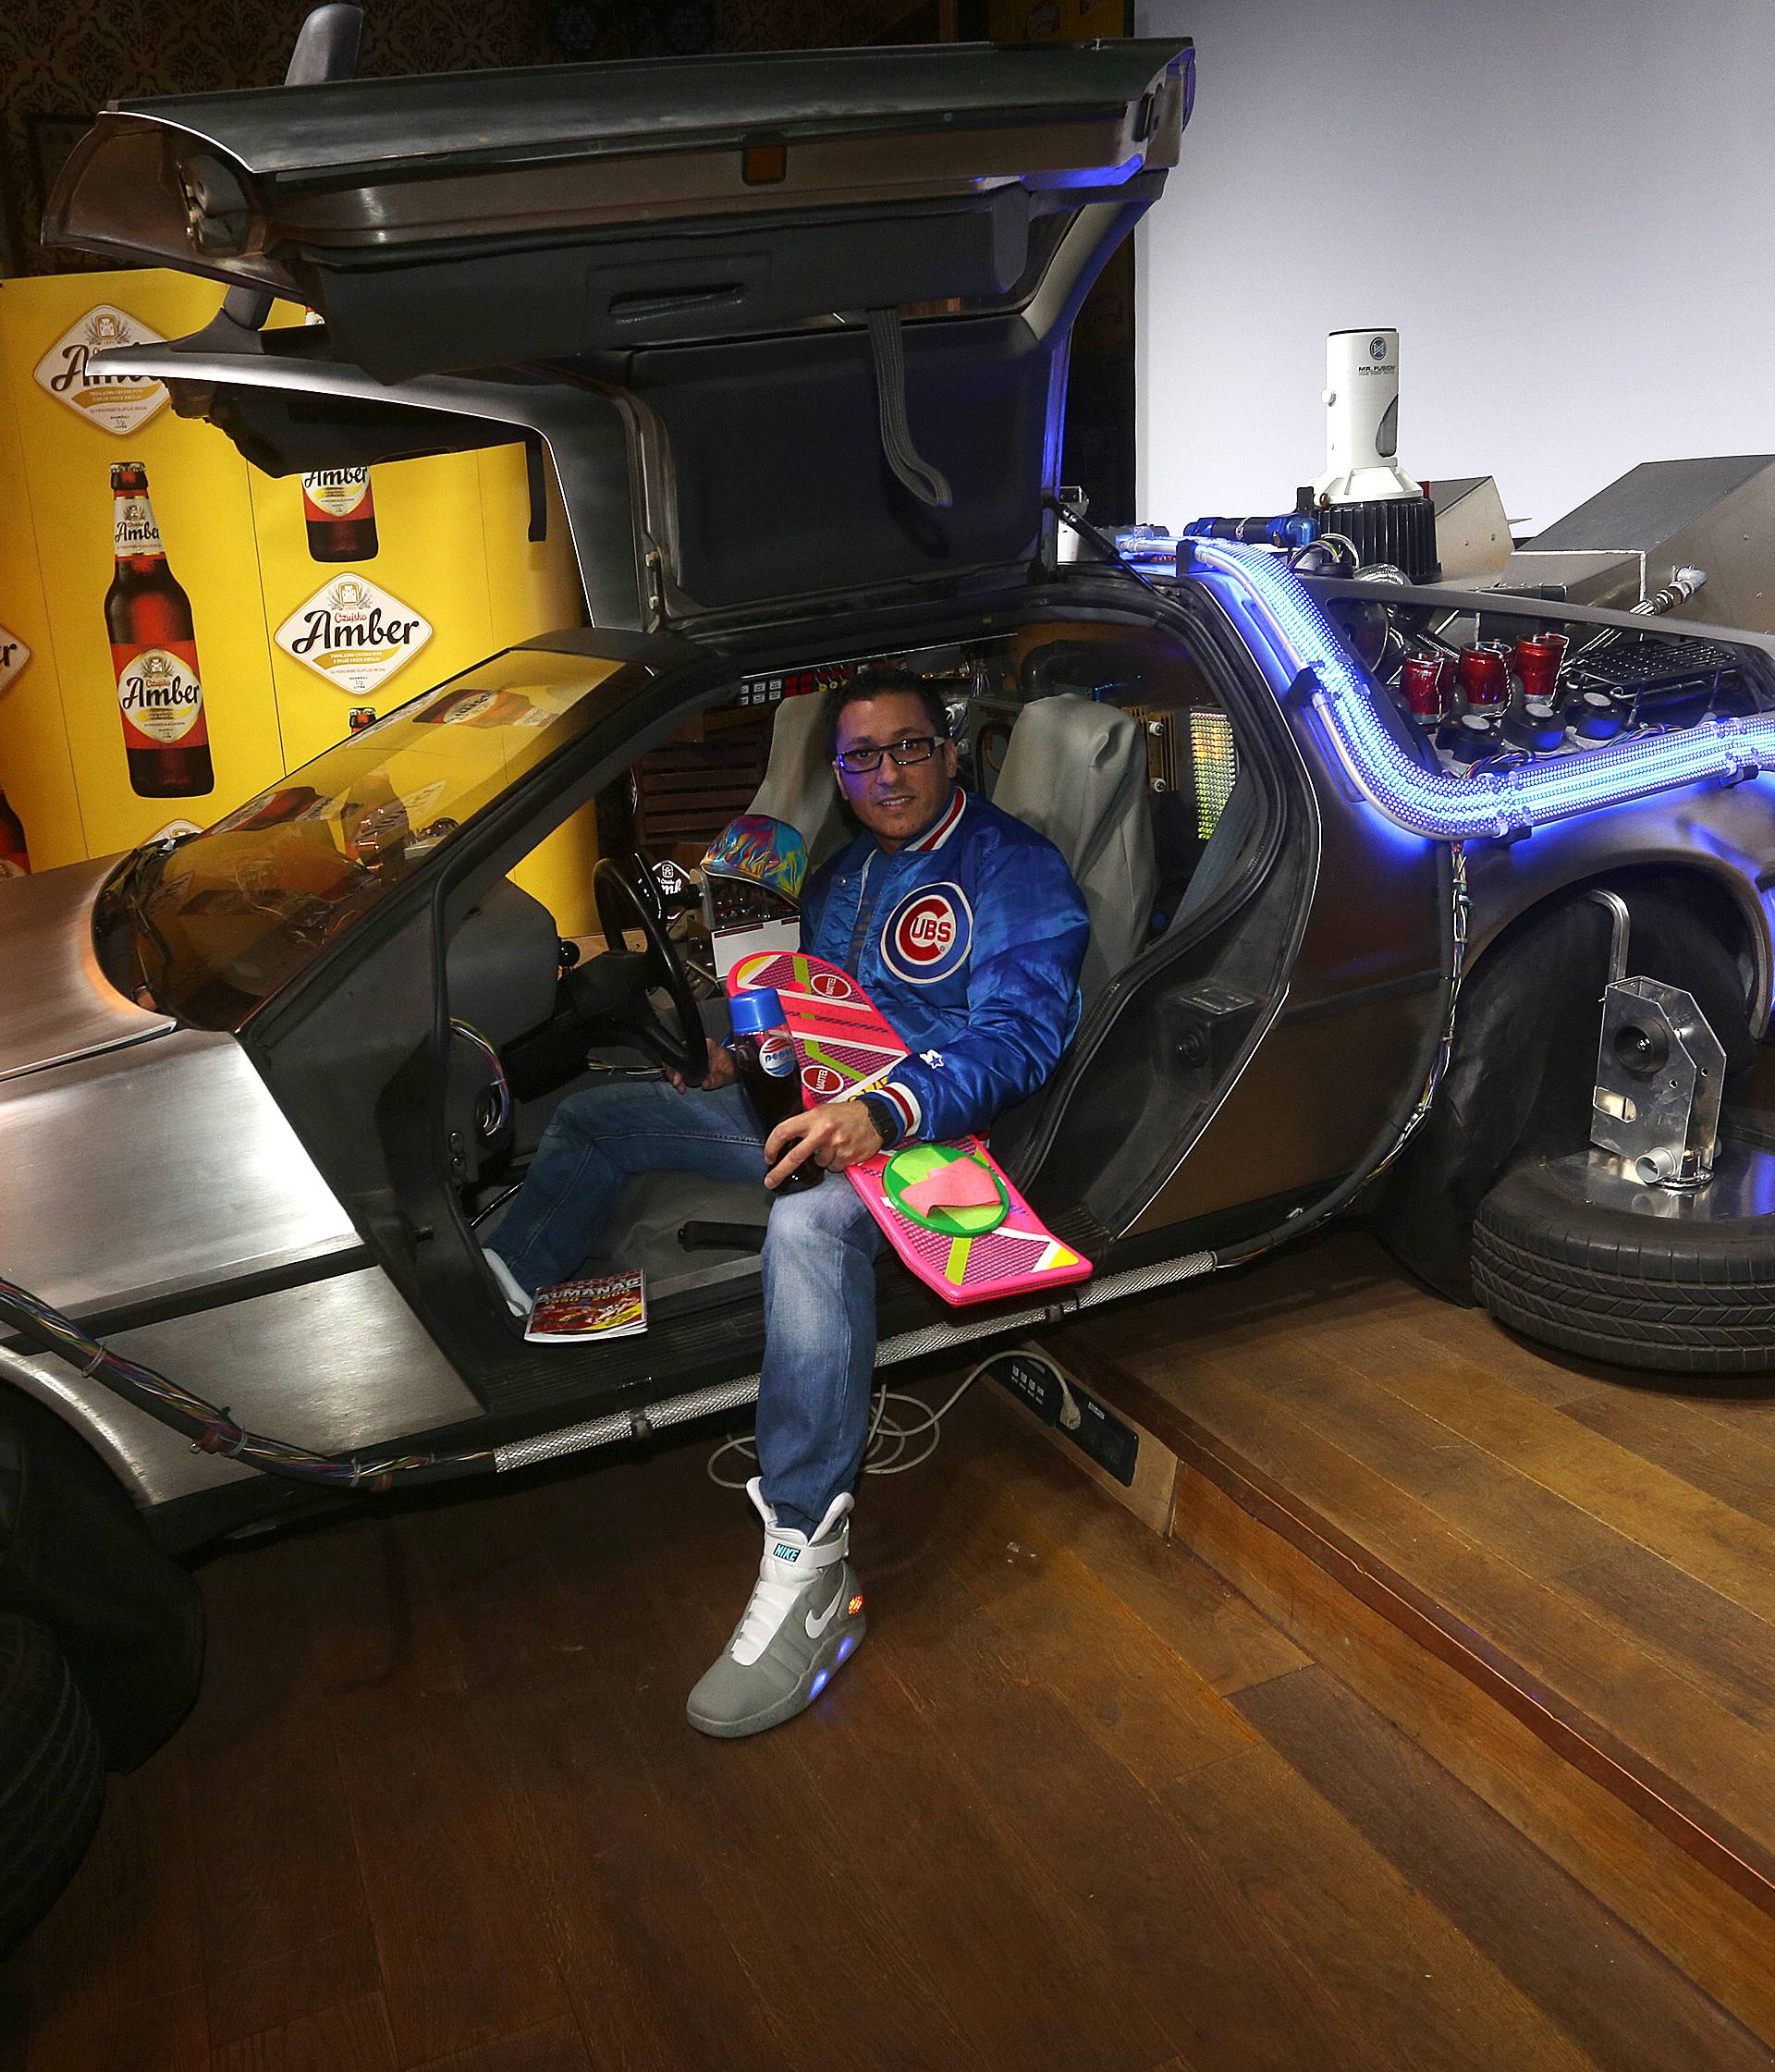 Ispunjenje sna:  'Kad dobijem na lotu, kupit ću si DeLorean’